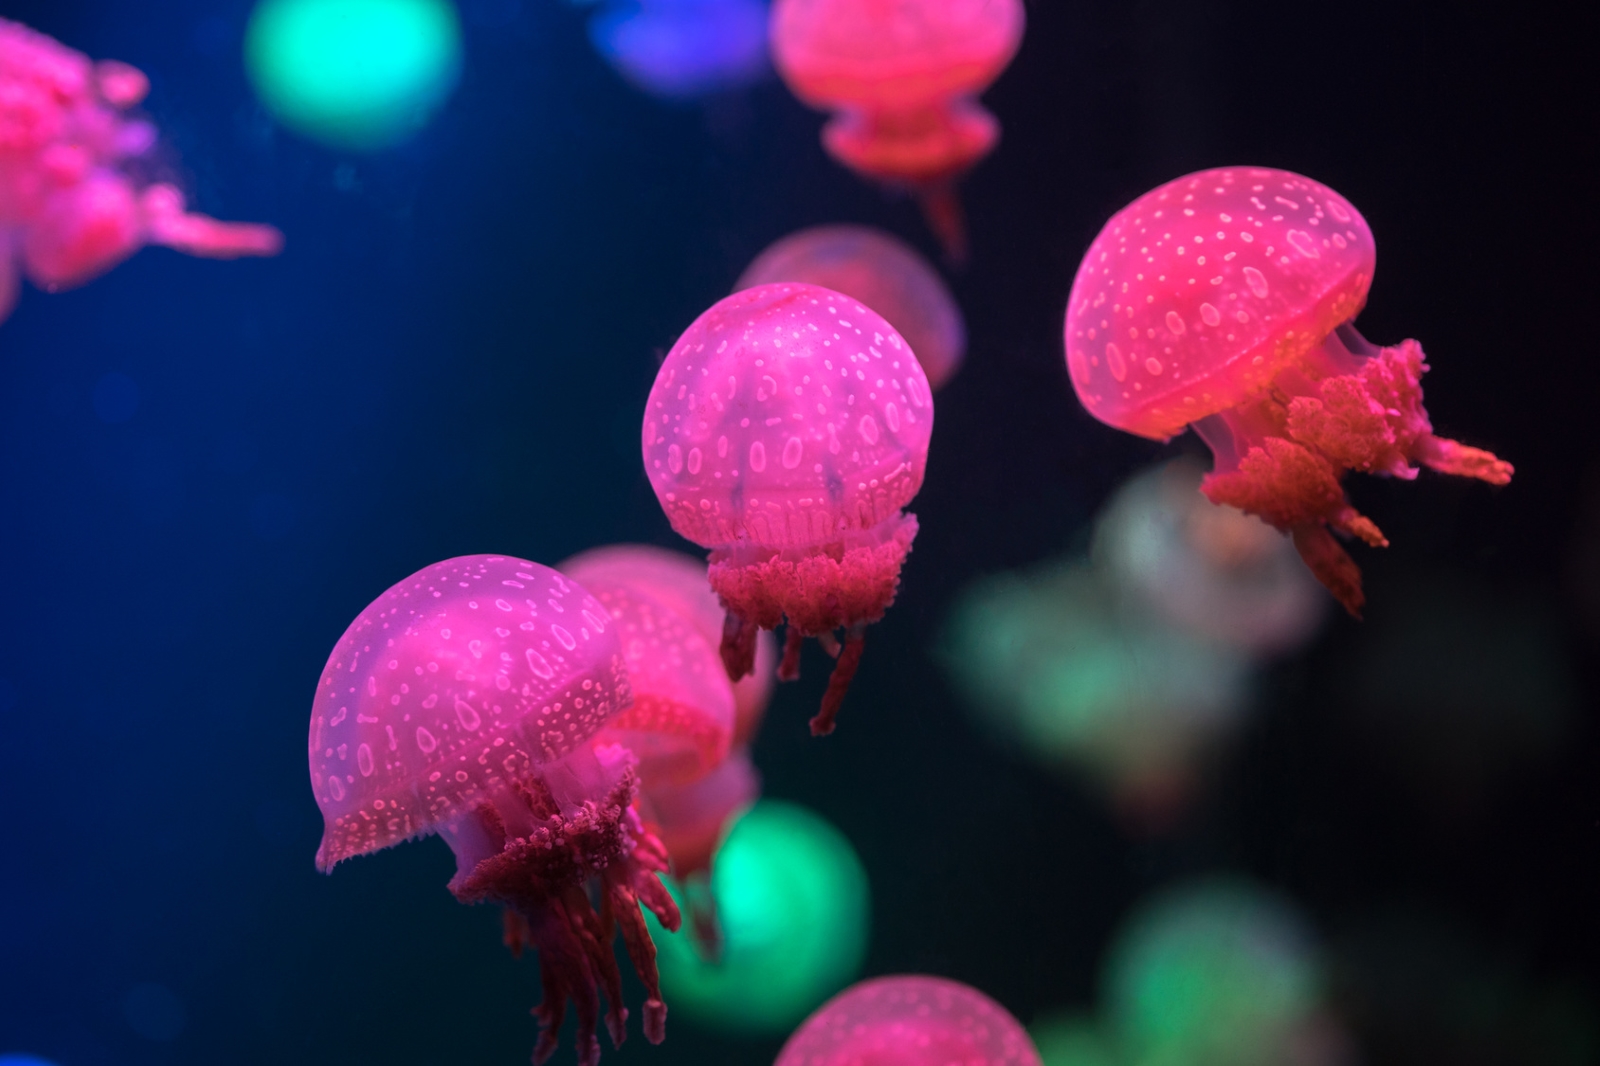 Inspirés des méduses, ces robots dotés de tentacules flexibles se propulsent grâce à un système hydraulique. Mesurant une vingtaine de centimètres, ils pourraient s'insérer dans la flore et la faune sous-marine sans la perturber. © Hanoi Photography, Fotolia